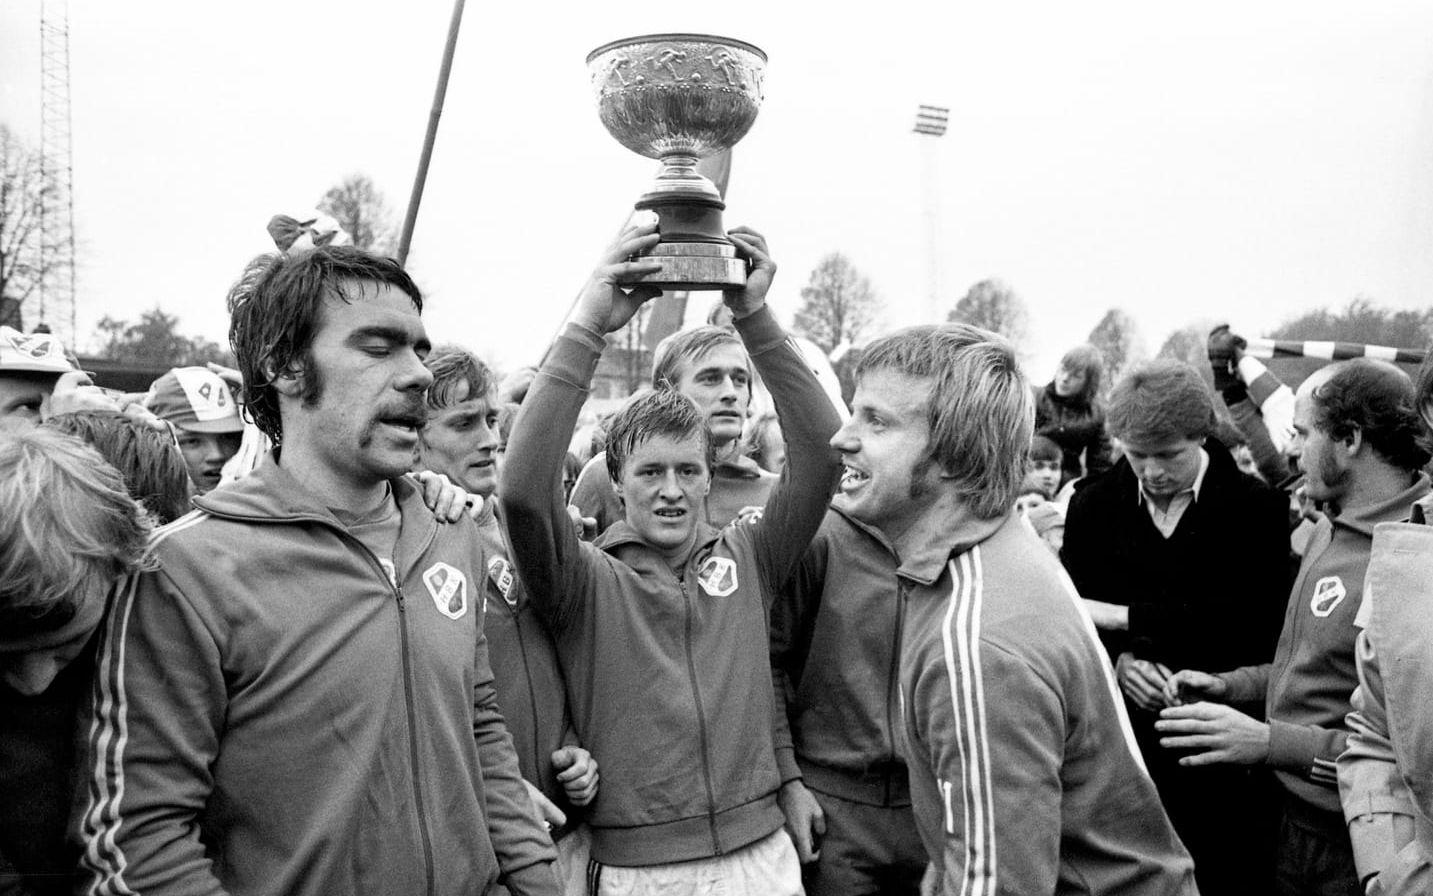 Första guldet. Totalt har Halland fyra SM-guld, samtliga tack vare HBK. Sigge Johansson, flankerad av Bertil Andersson till vänster och ”Svängsta-Larsson” till höger, håller här upp pokalen efter guldet 1976. Bild: Bildbyrån